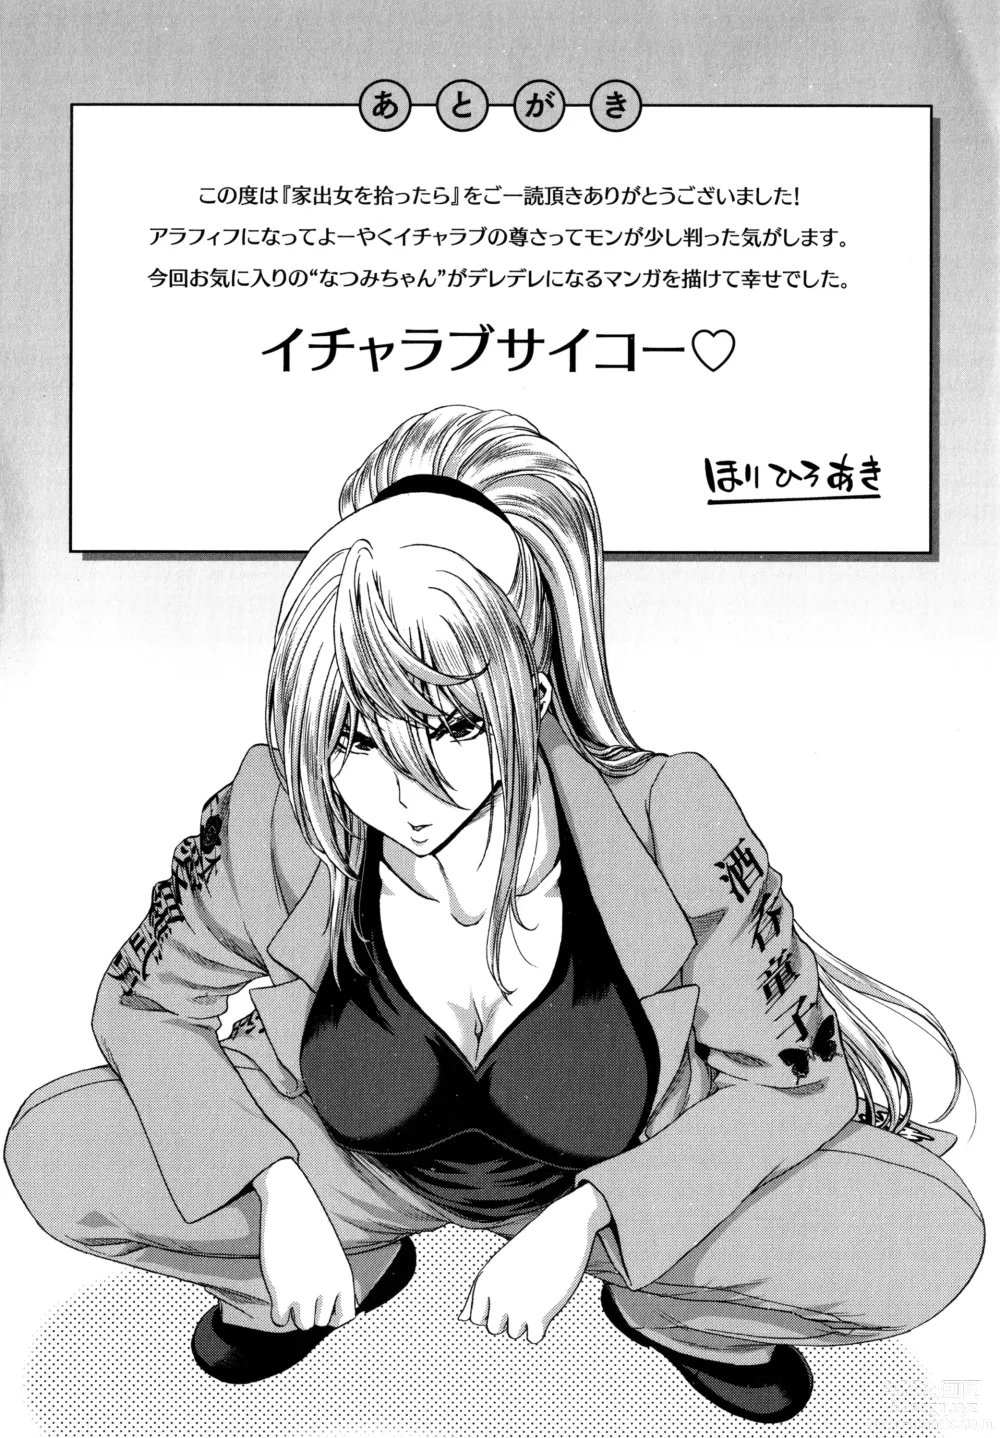 Page 179 of manga Iede Onna o Hirottara - When I picked up a runaway girl. + Melonbooks Gentei Tokuten   Otona no Iede Gojitsudan Sono Ato no Arisa to Akira